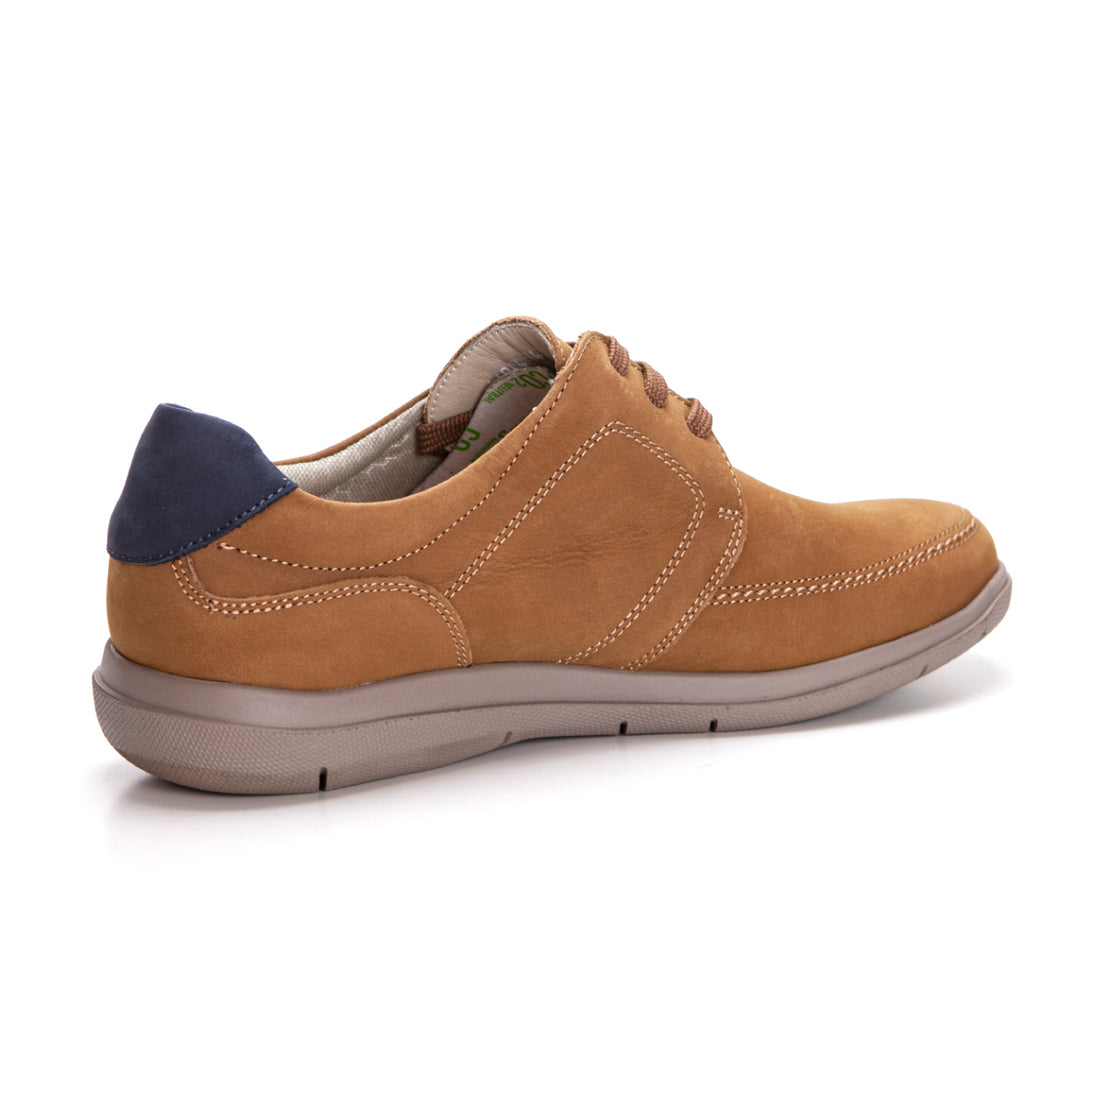 Callaghan 46804 Zapatos de Cordones para Hombre marrón| Ligereza y Comodidad